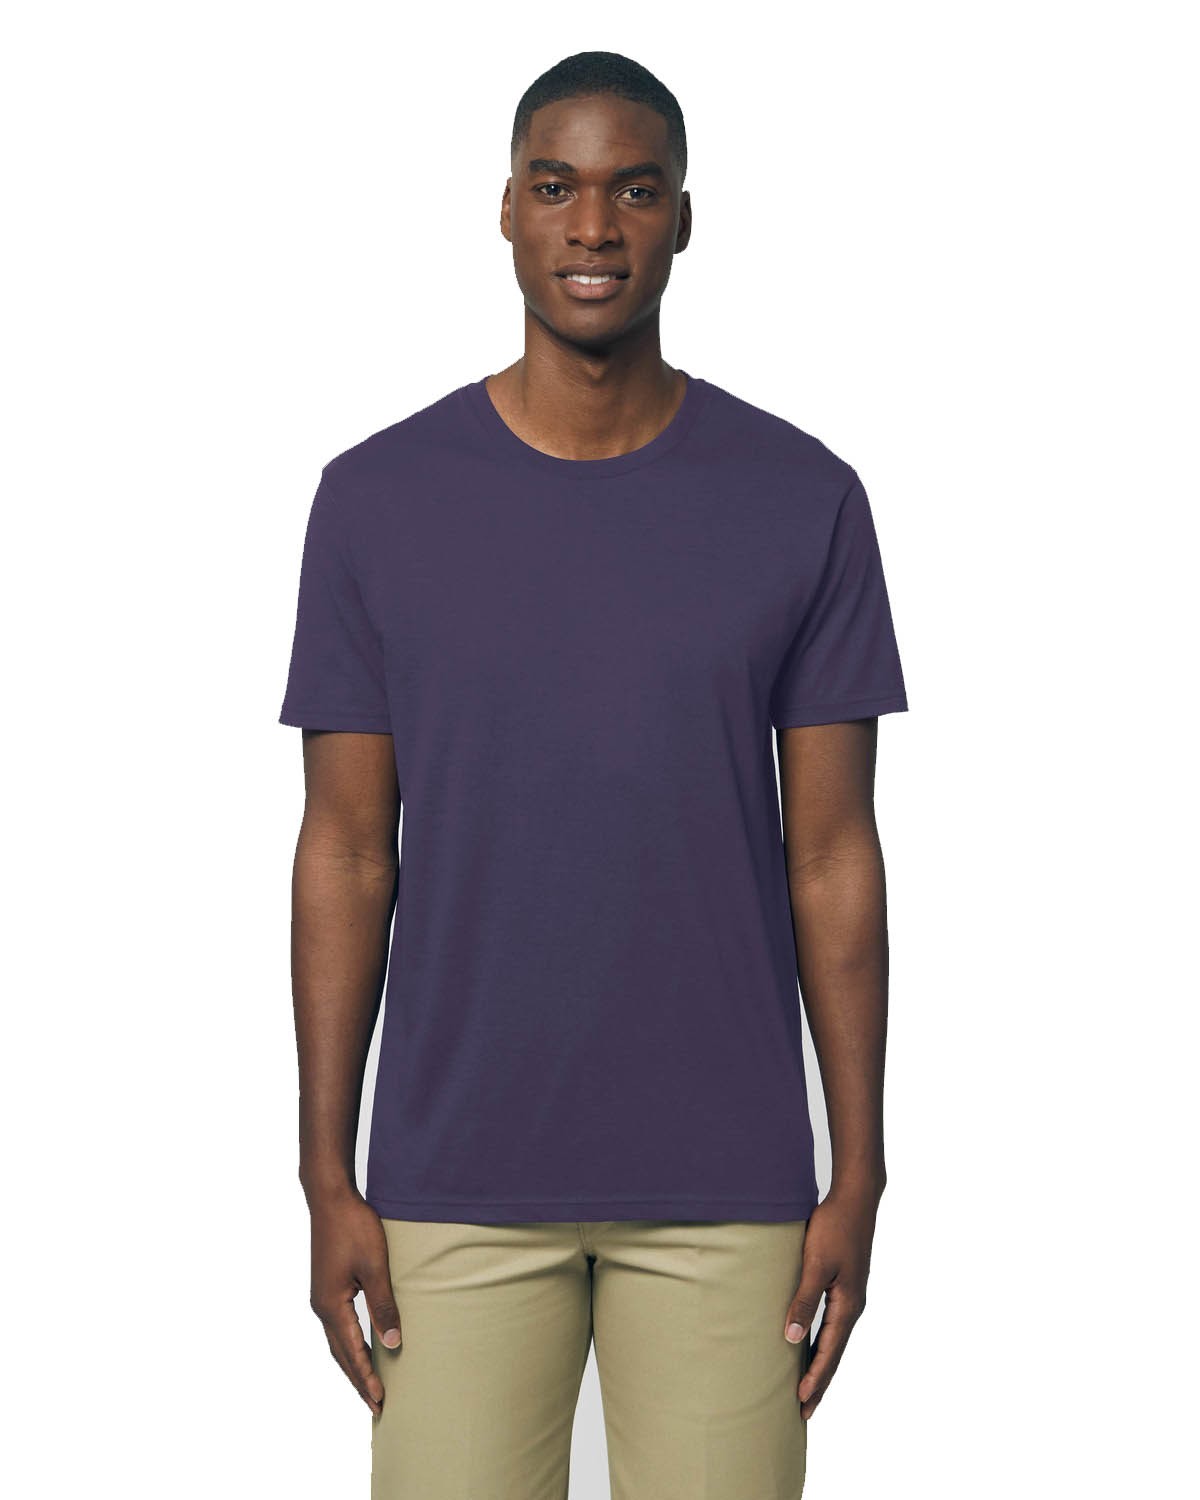 Camiseta orgánica unisex de color _758U/ 150gr